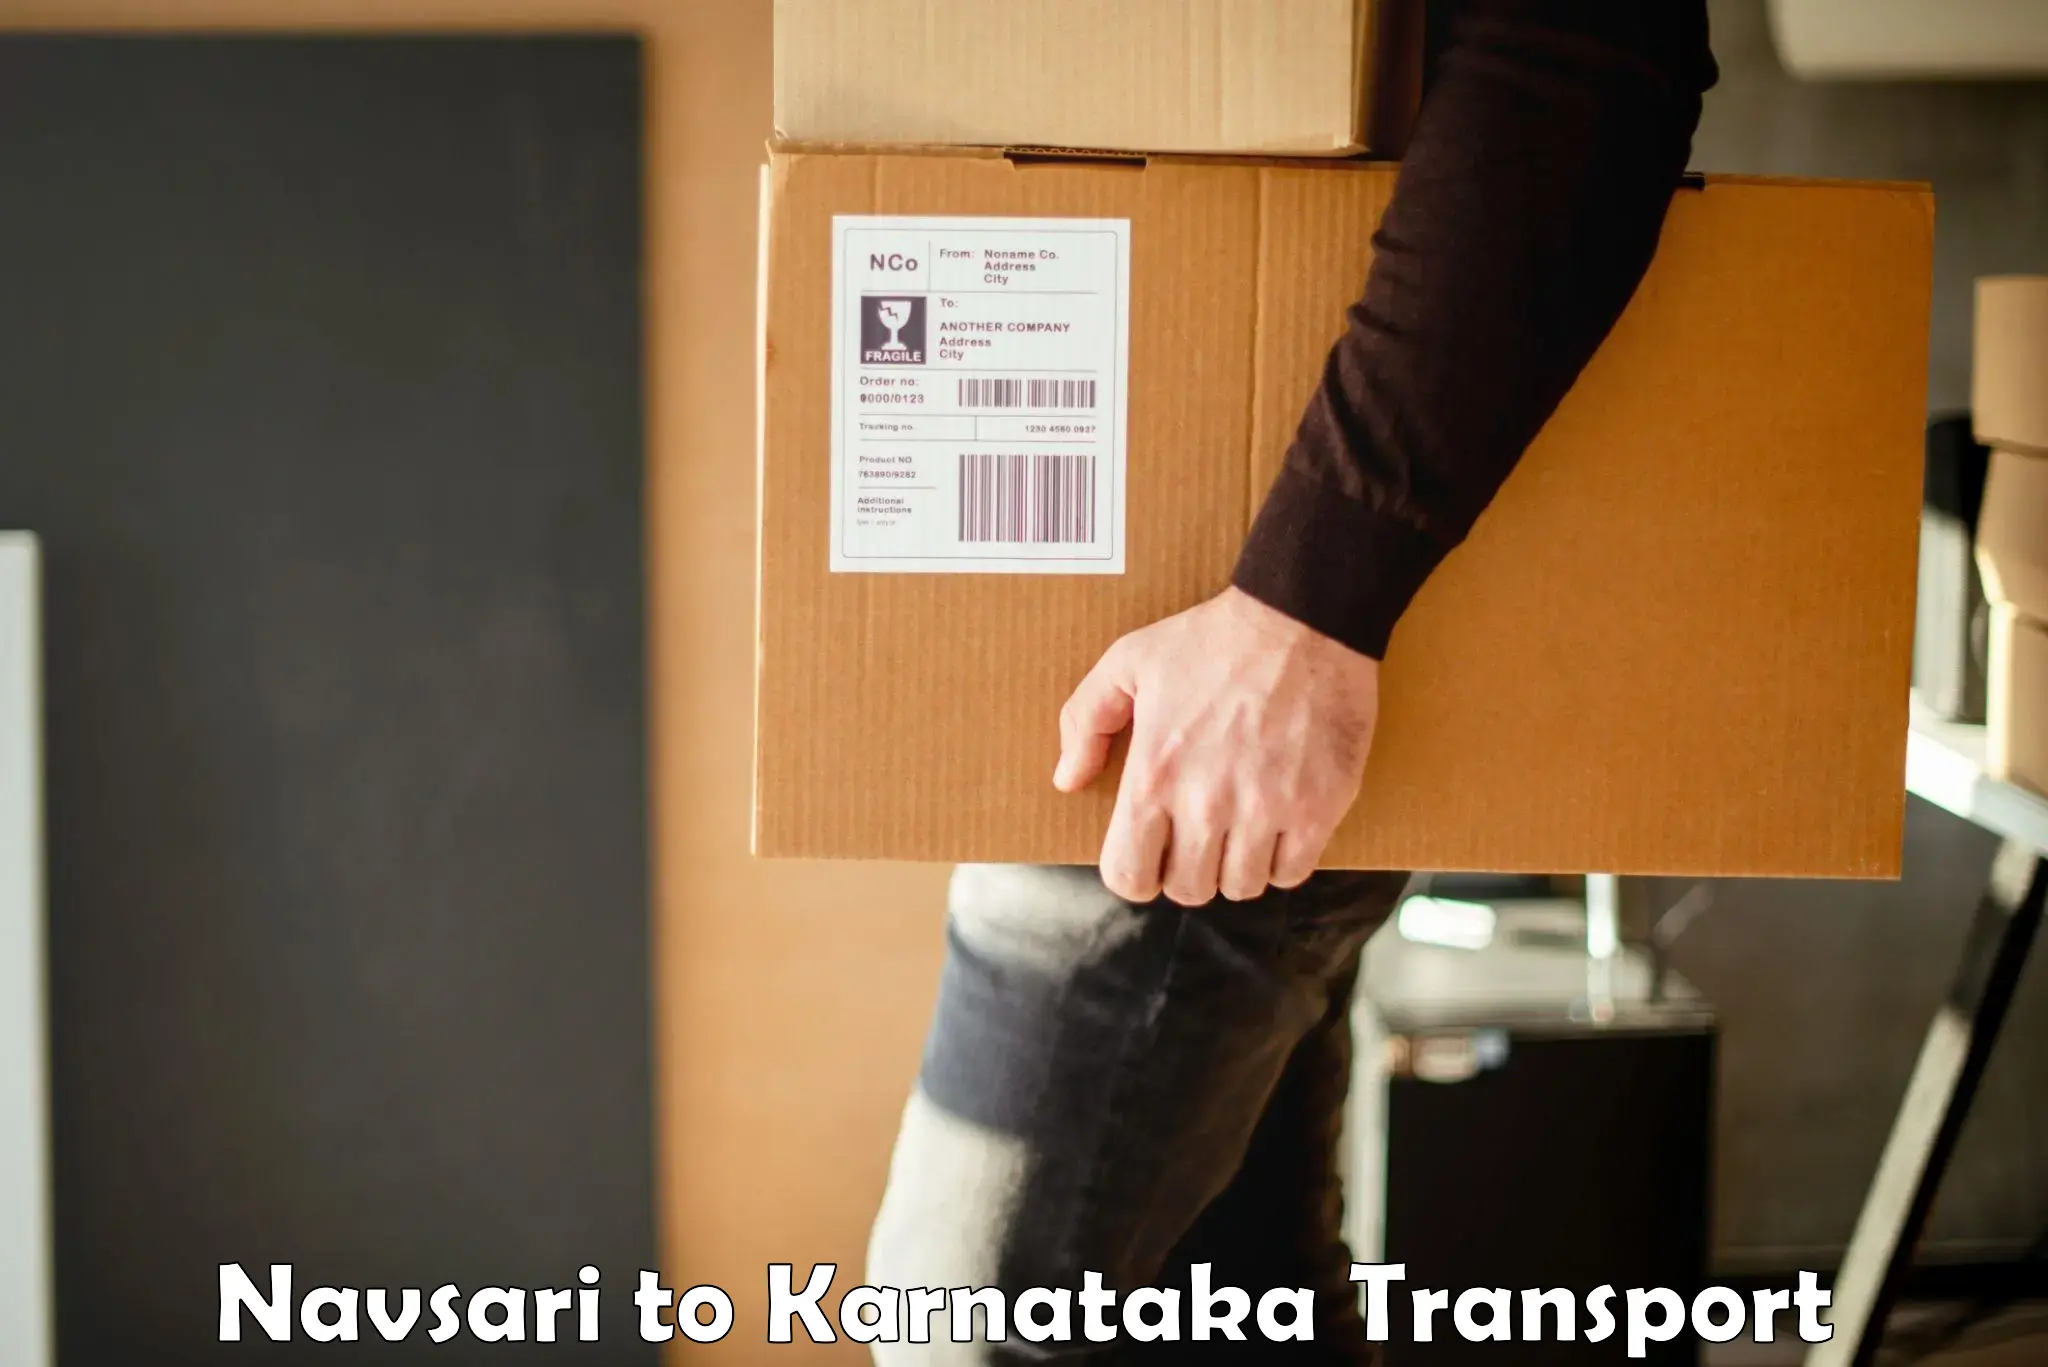 Container transport service Navsari to Dandeli